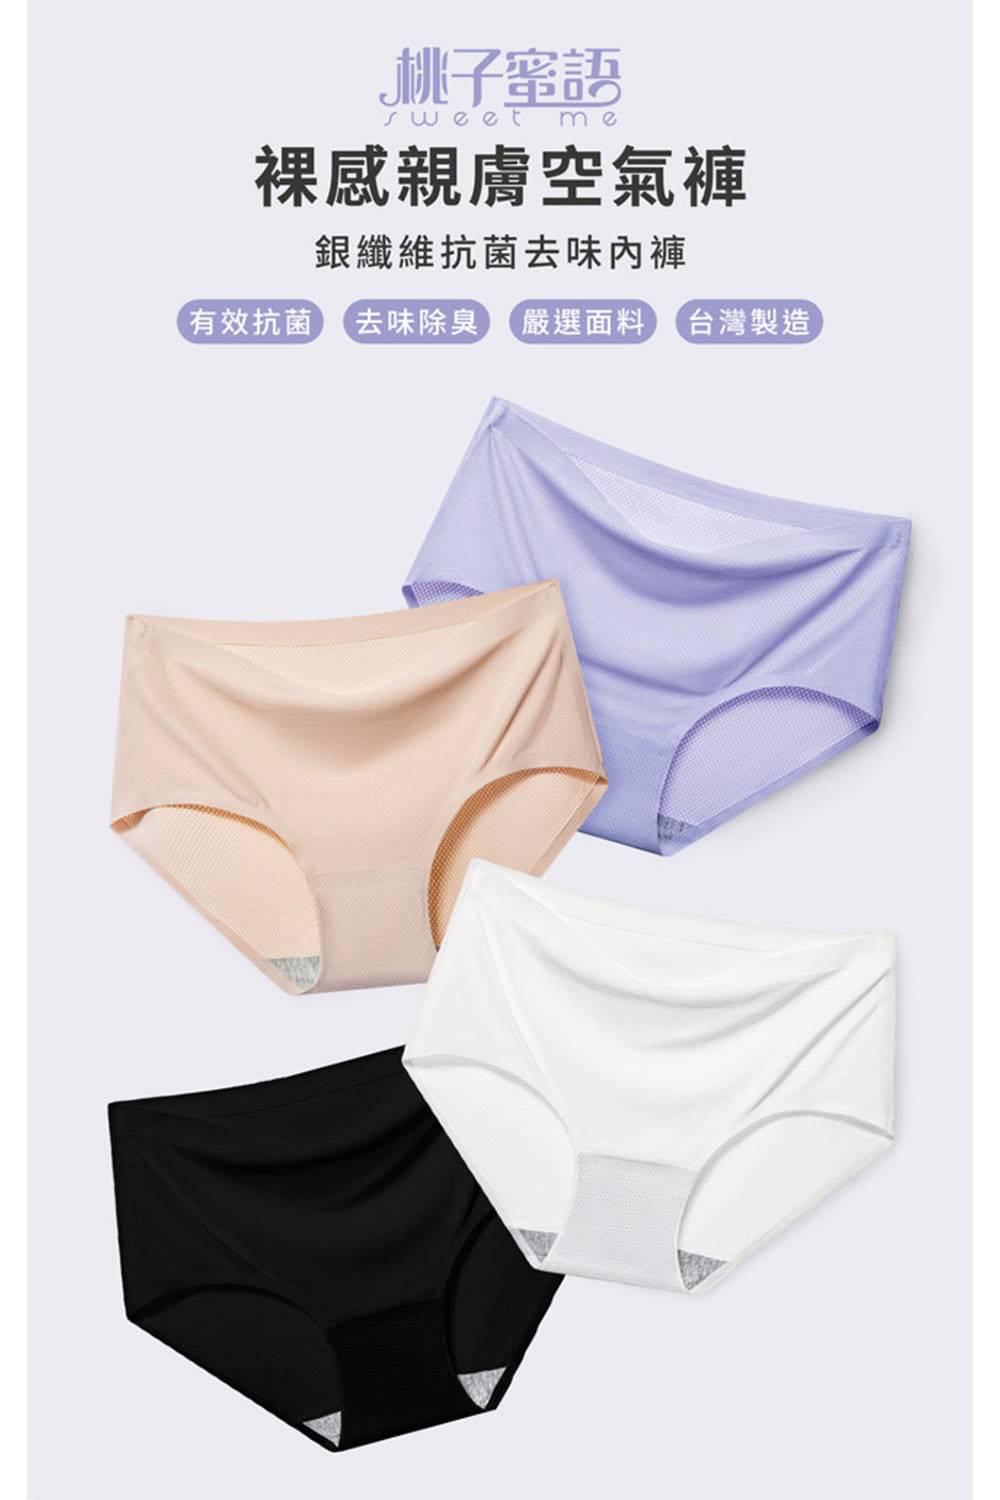 桃子蜜語 裸感親膚空氣褲 20件組(尺寸任選.顏色隨機)優惠